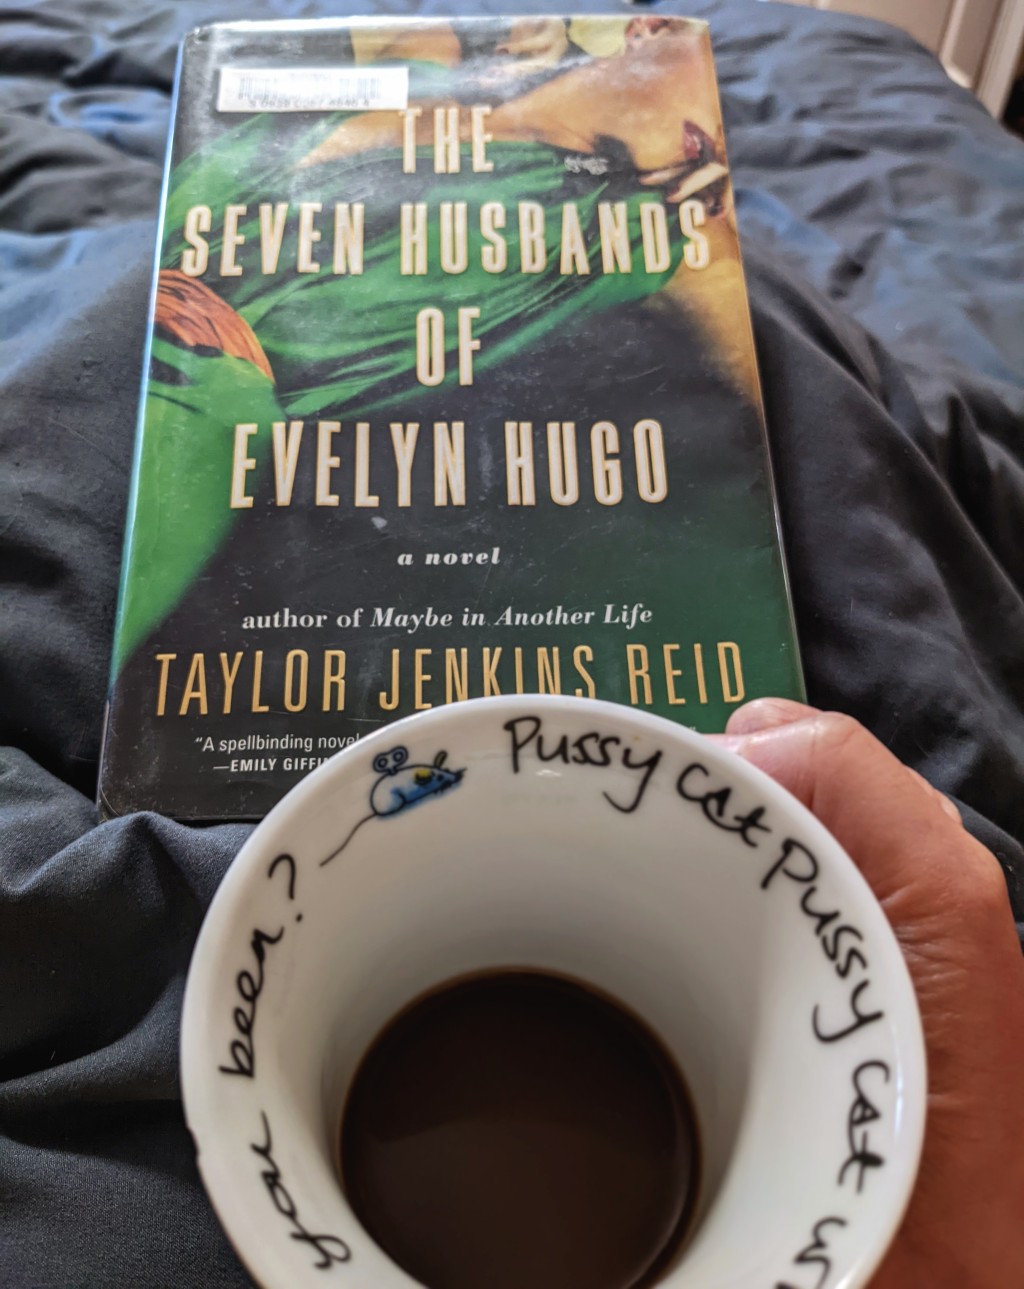 The Seven Husbands of Evelyn Hugo